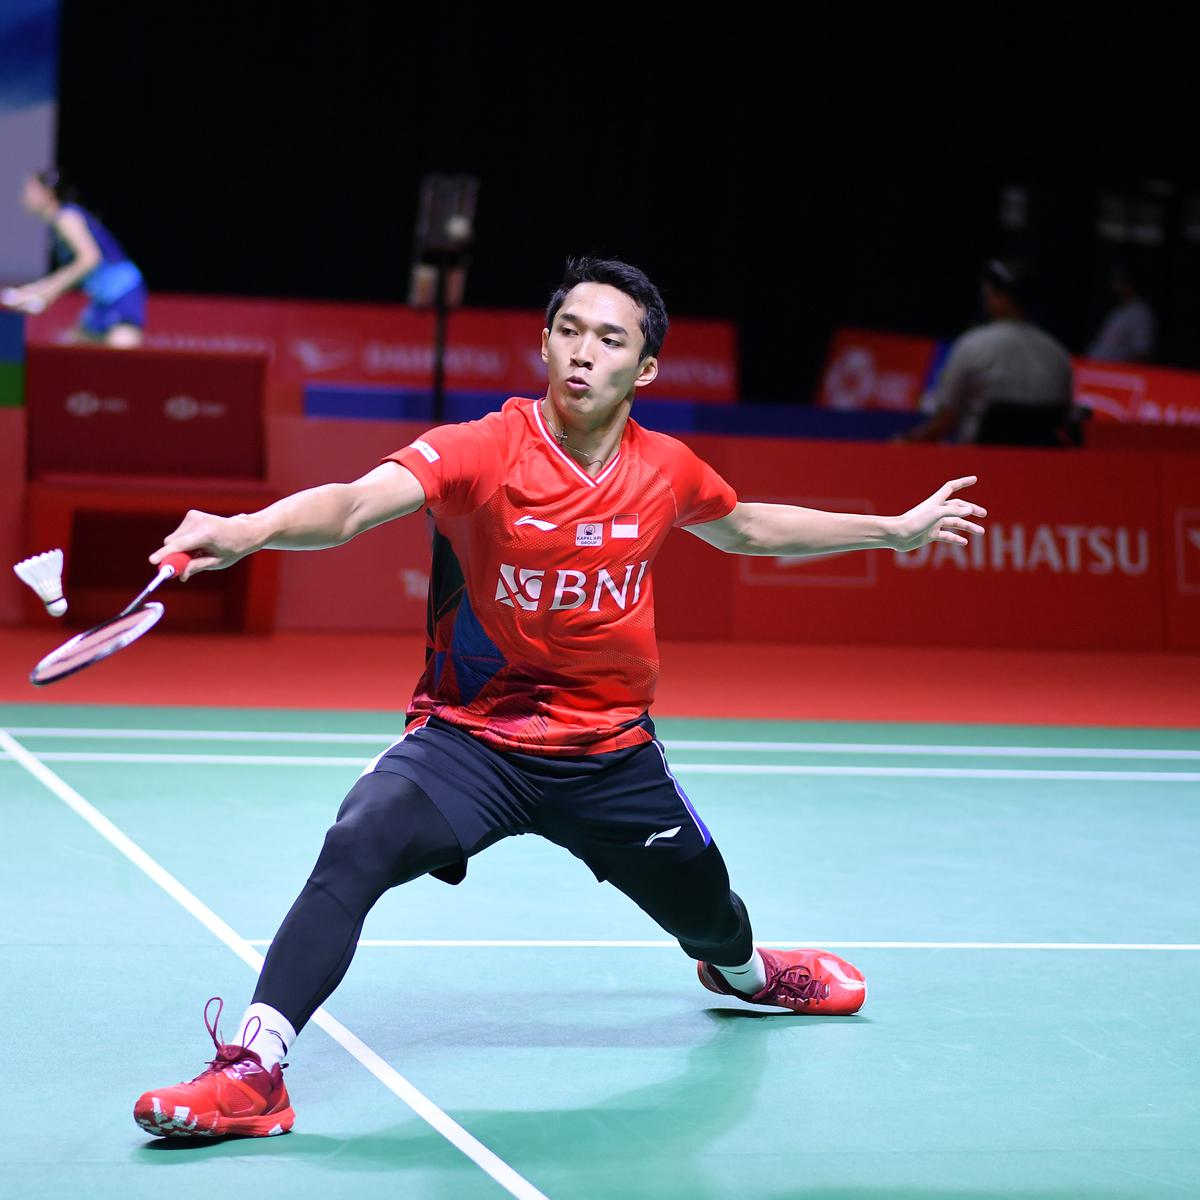 Badminton terbuka indonesia 2021